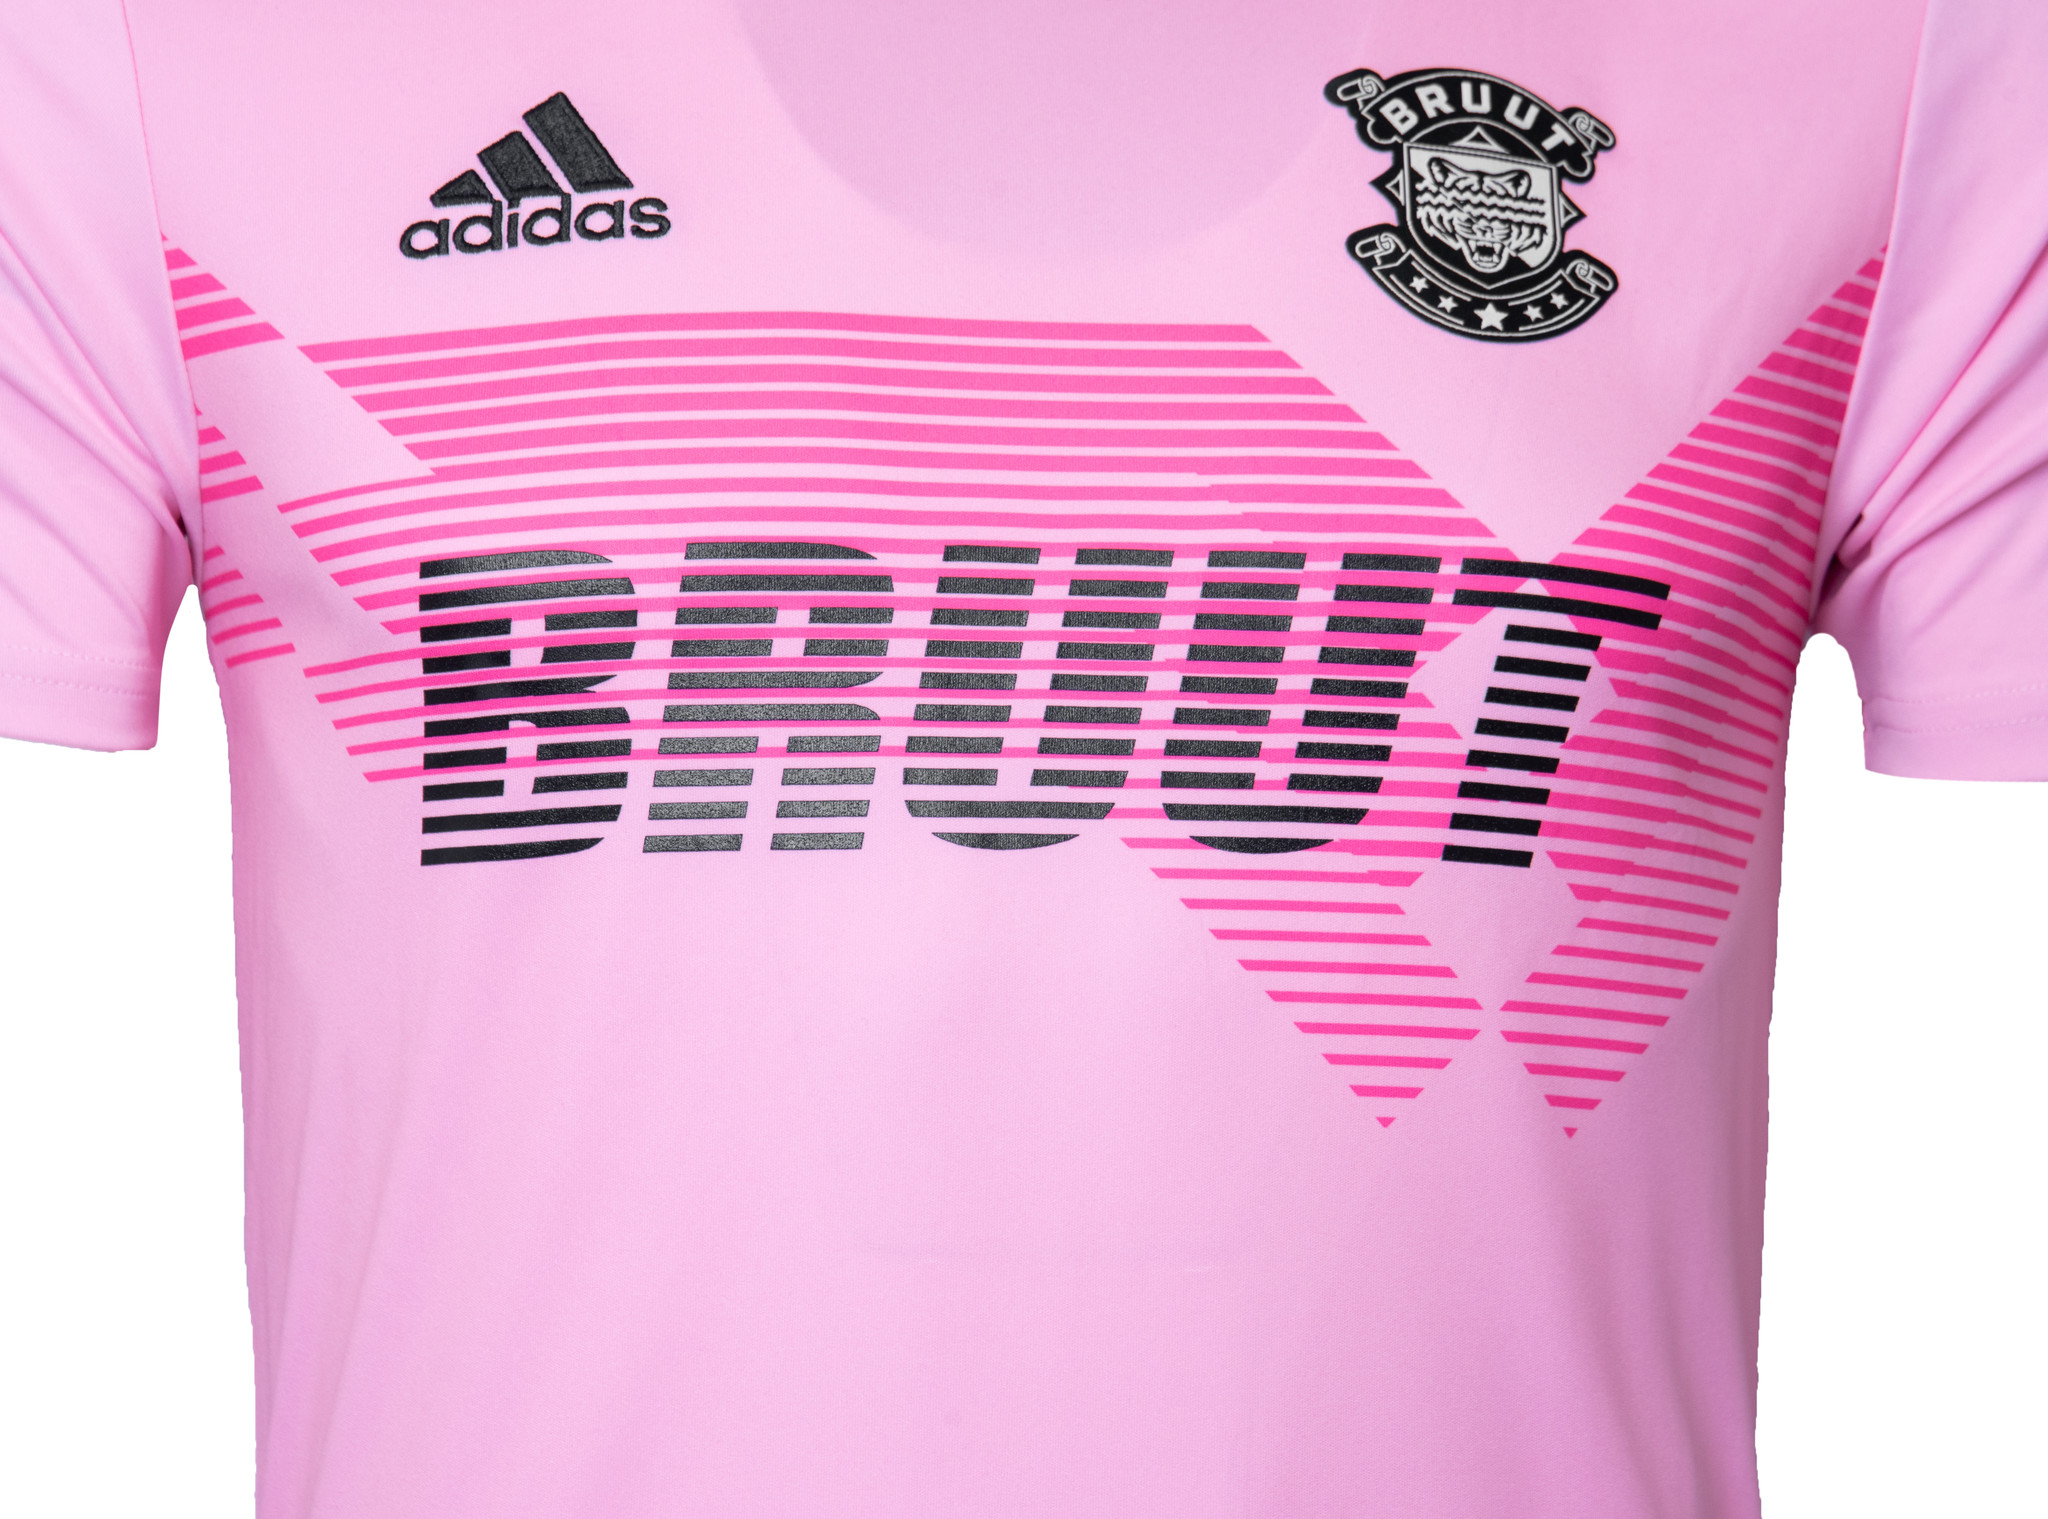 pink adidas football shirt